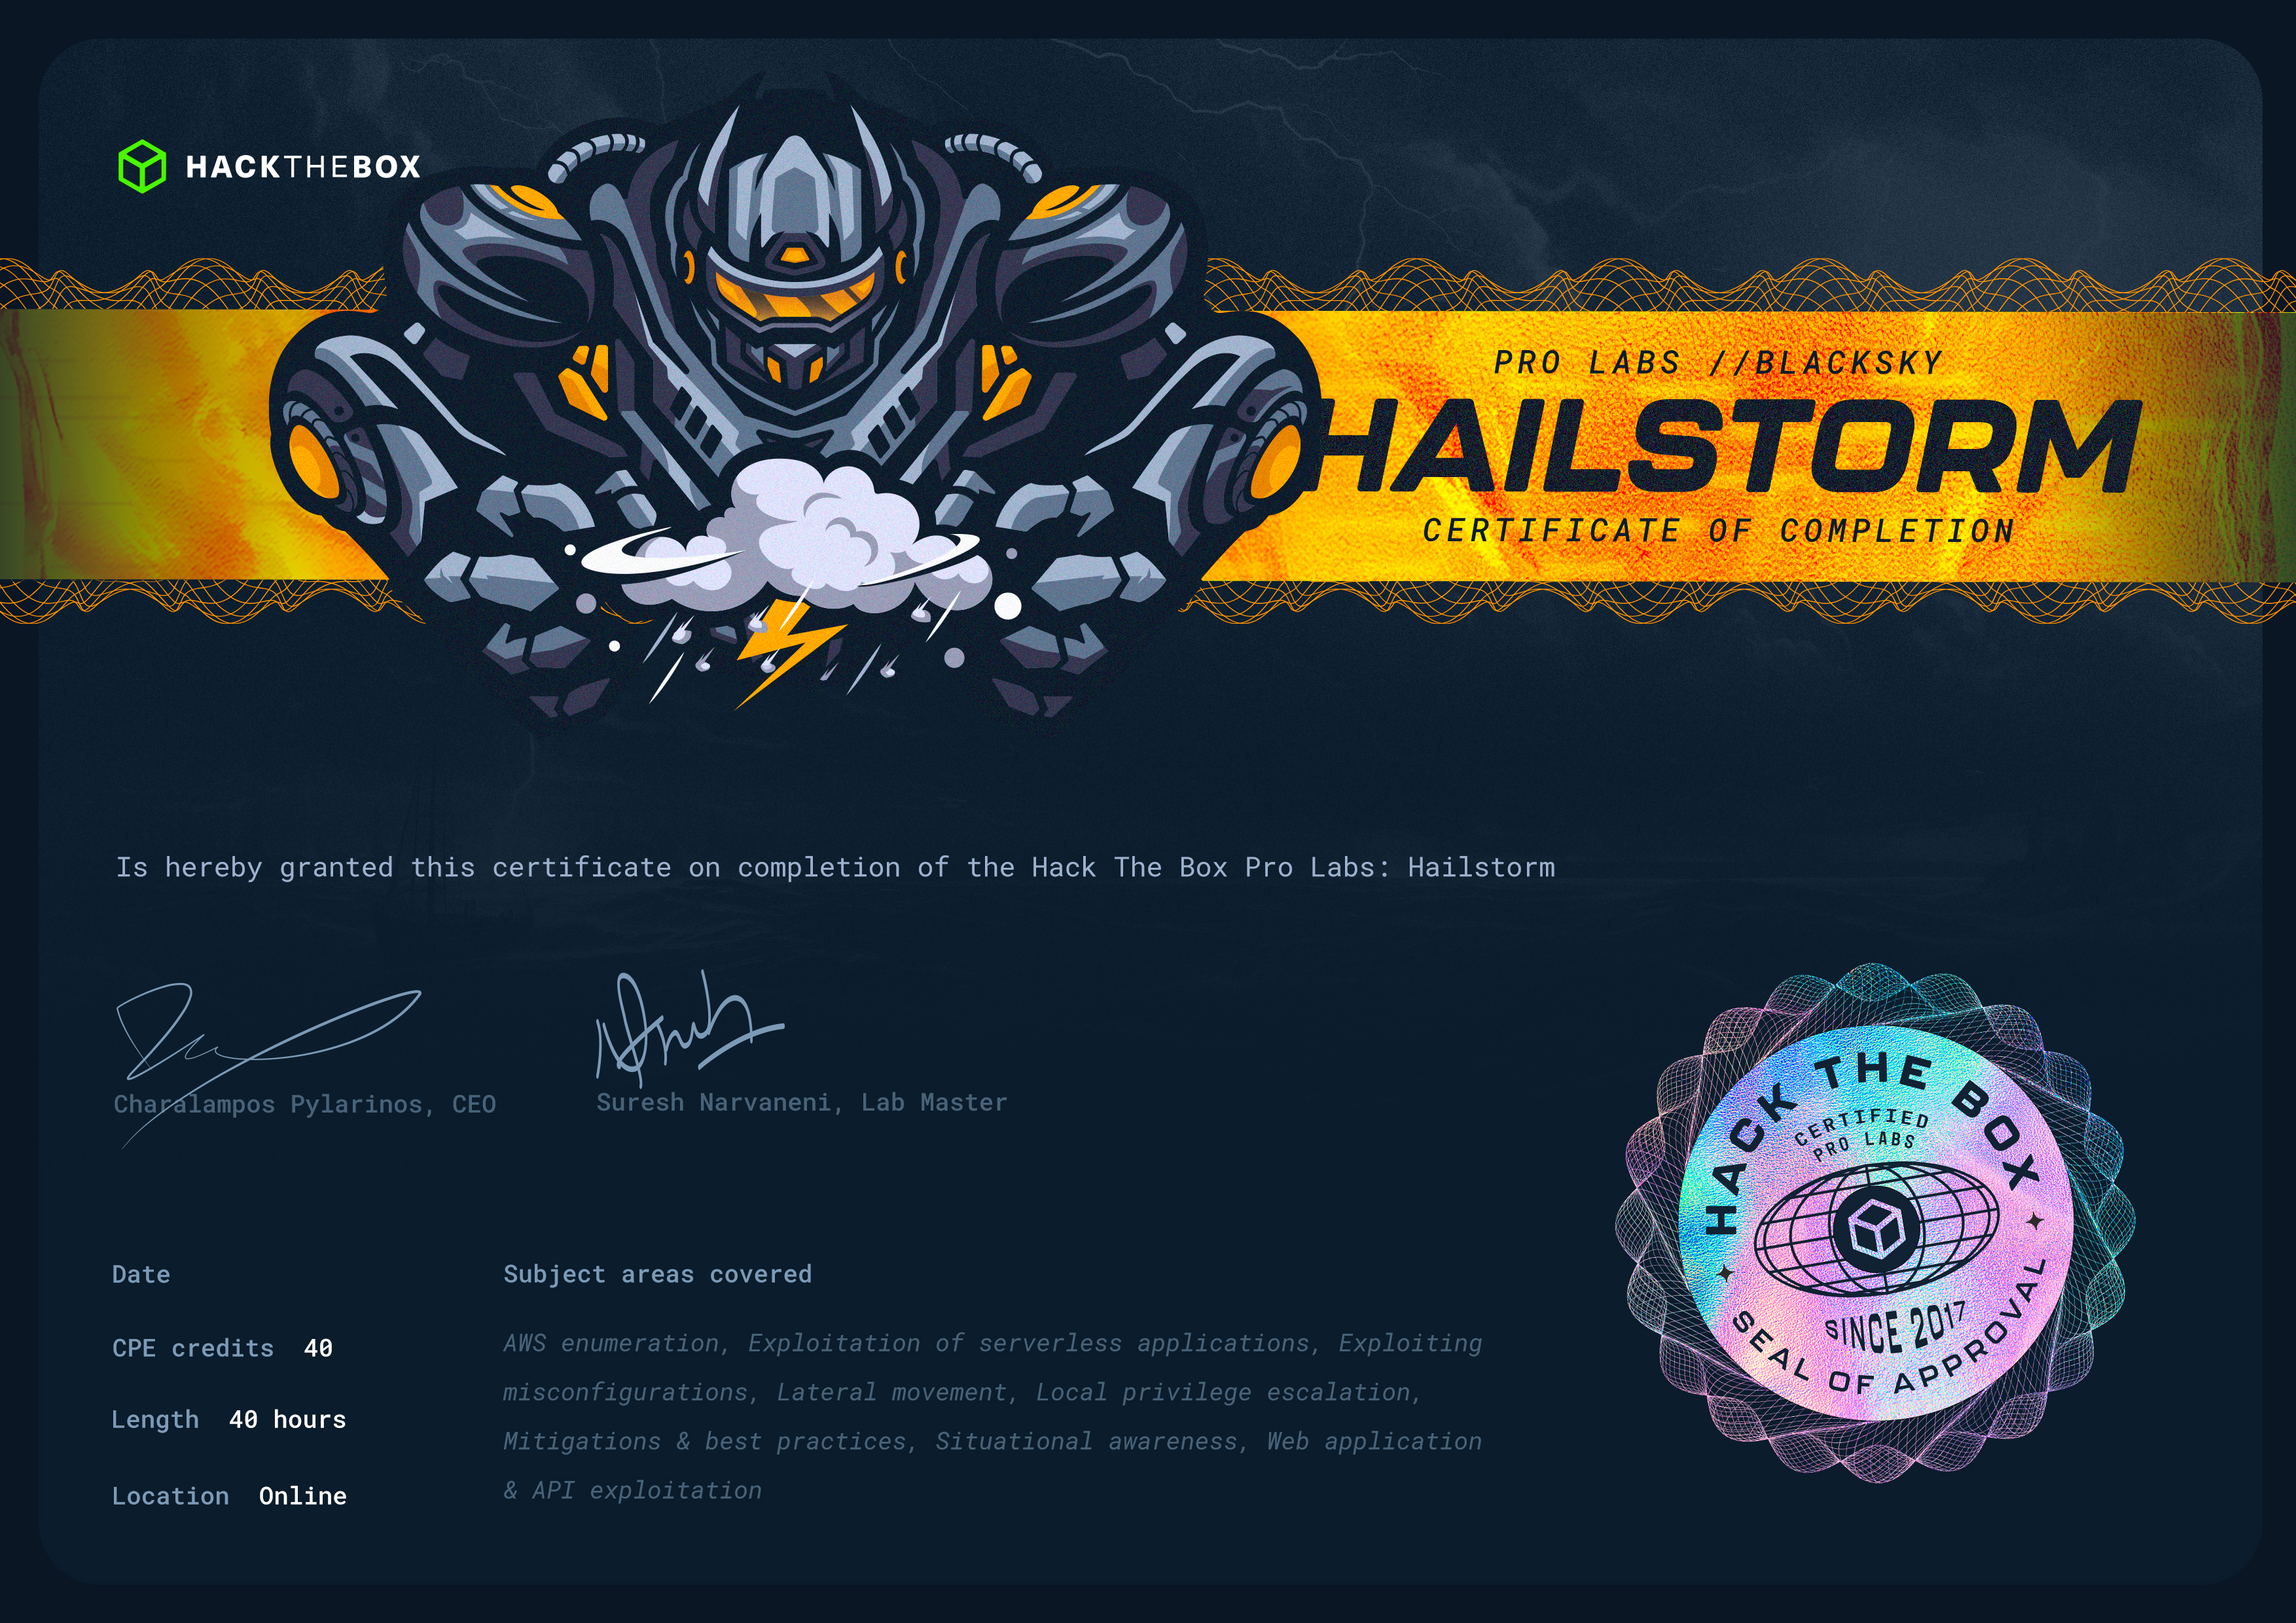 Hailstorm Certificate